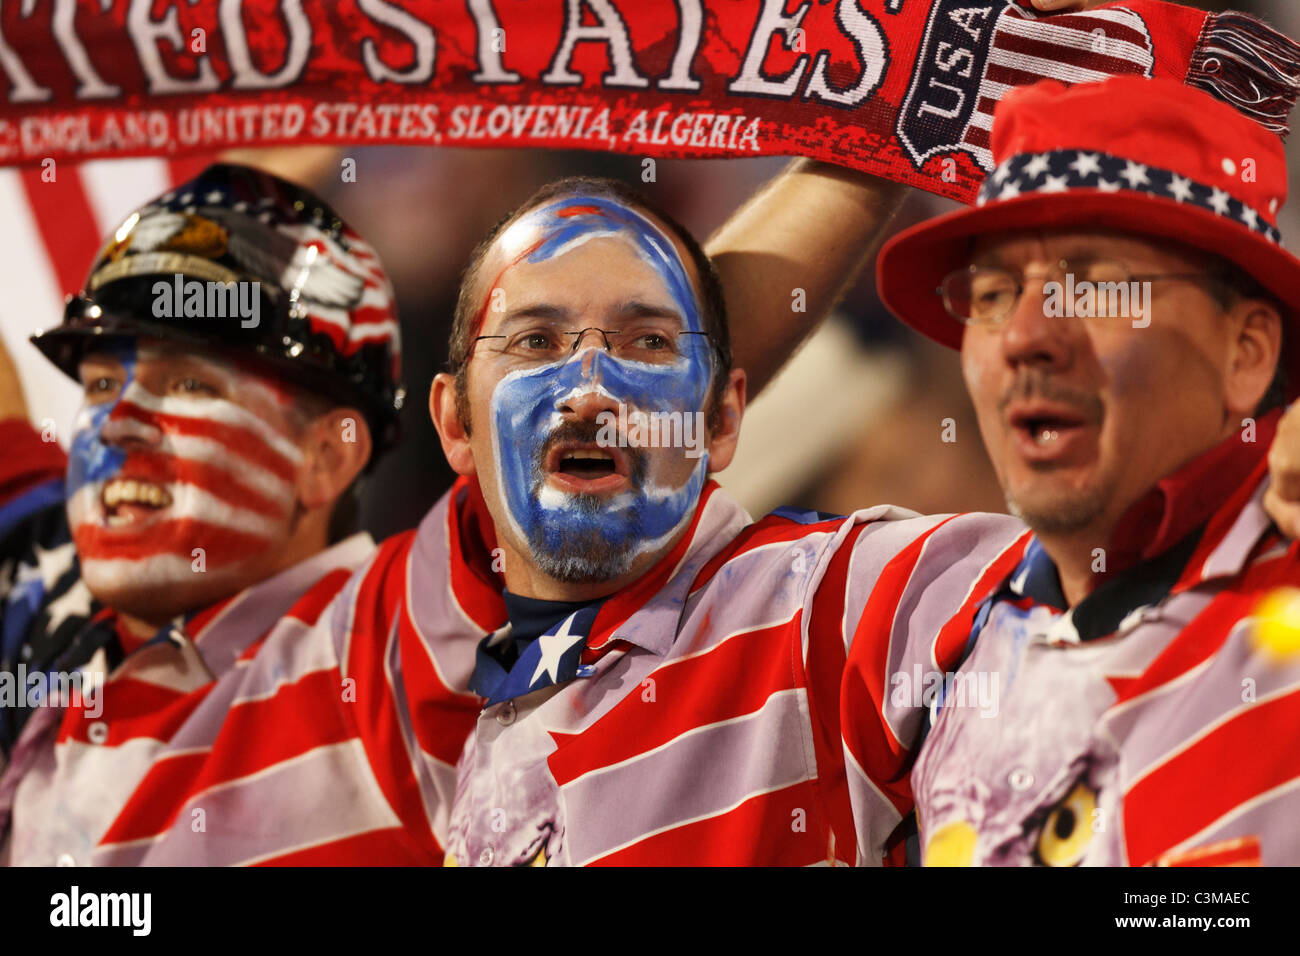 USA-Fans jubeln nach der USA Algerien auf eine dramatische spätes Tor in einem 2010 World Cup Soccer Match besiegte. Stockfoto